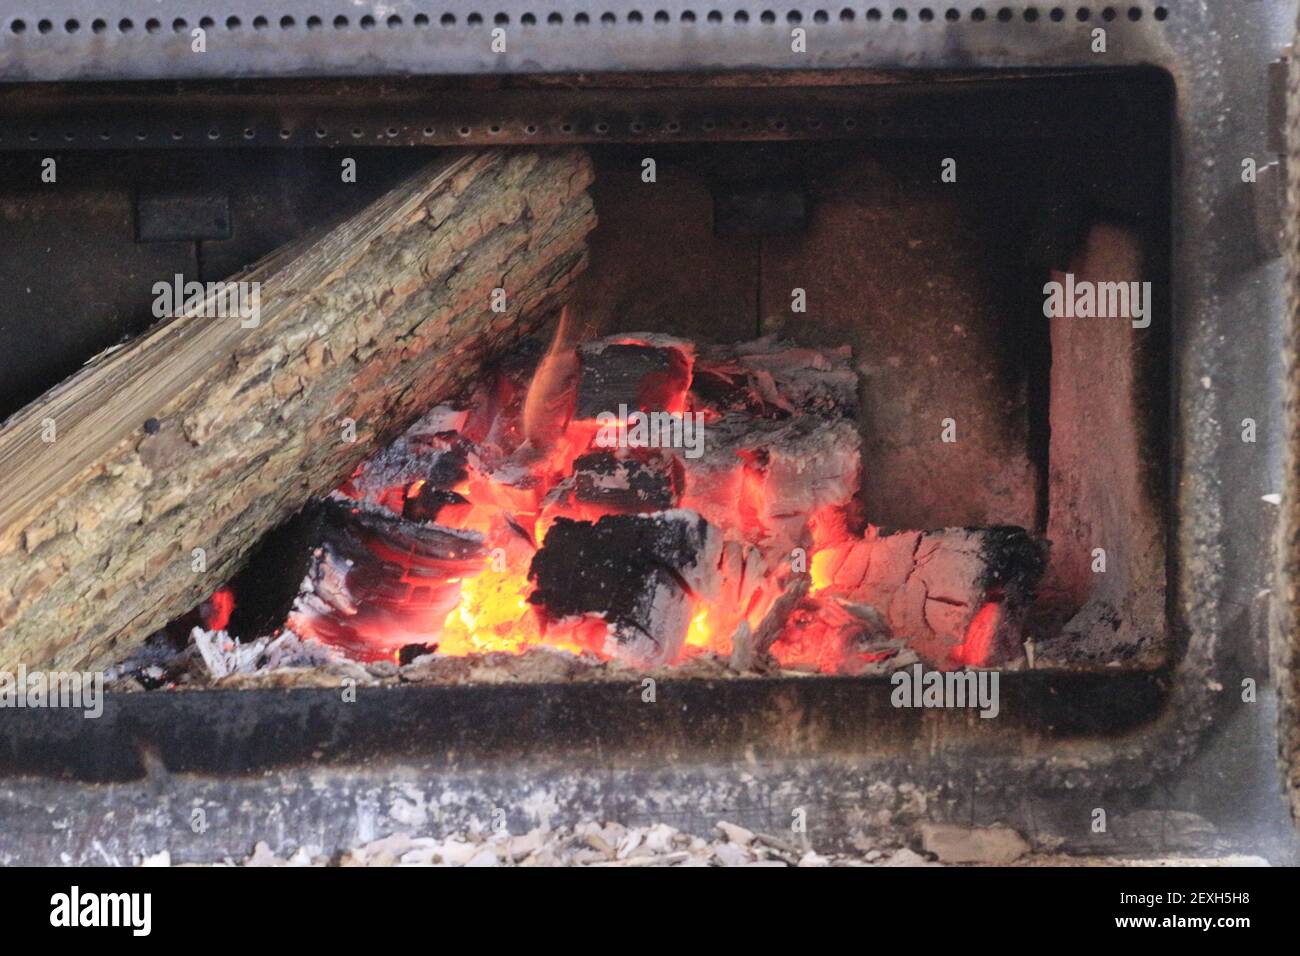 Agregar madera a una estufa de madera durante los fríos meses de invierno. Foto de stock